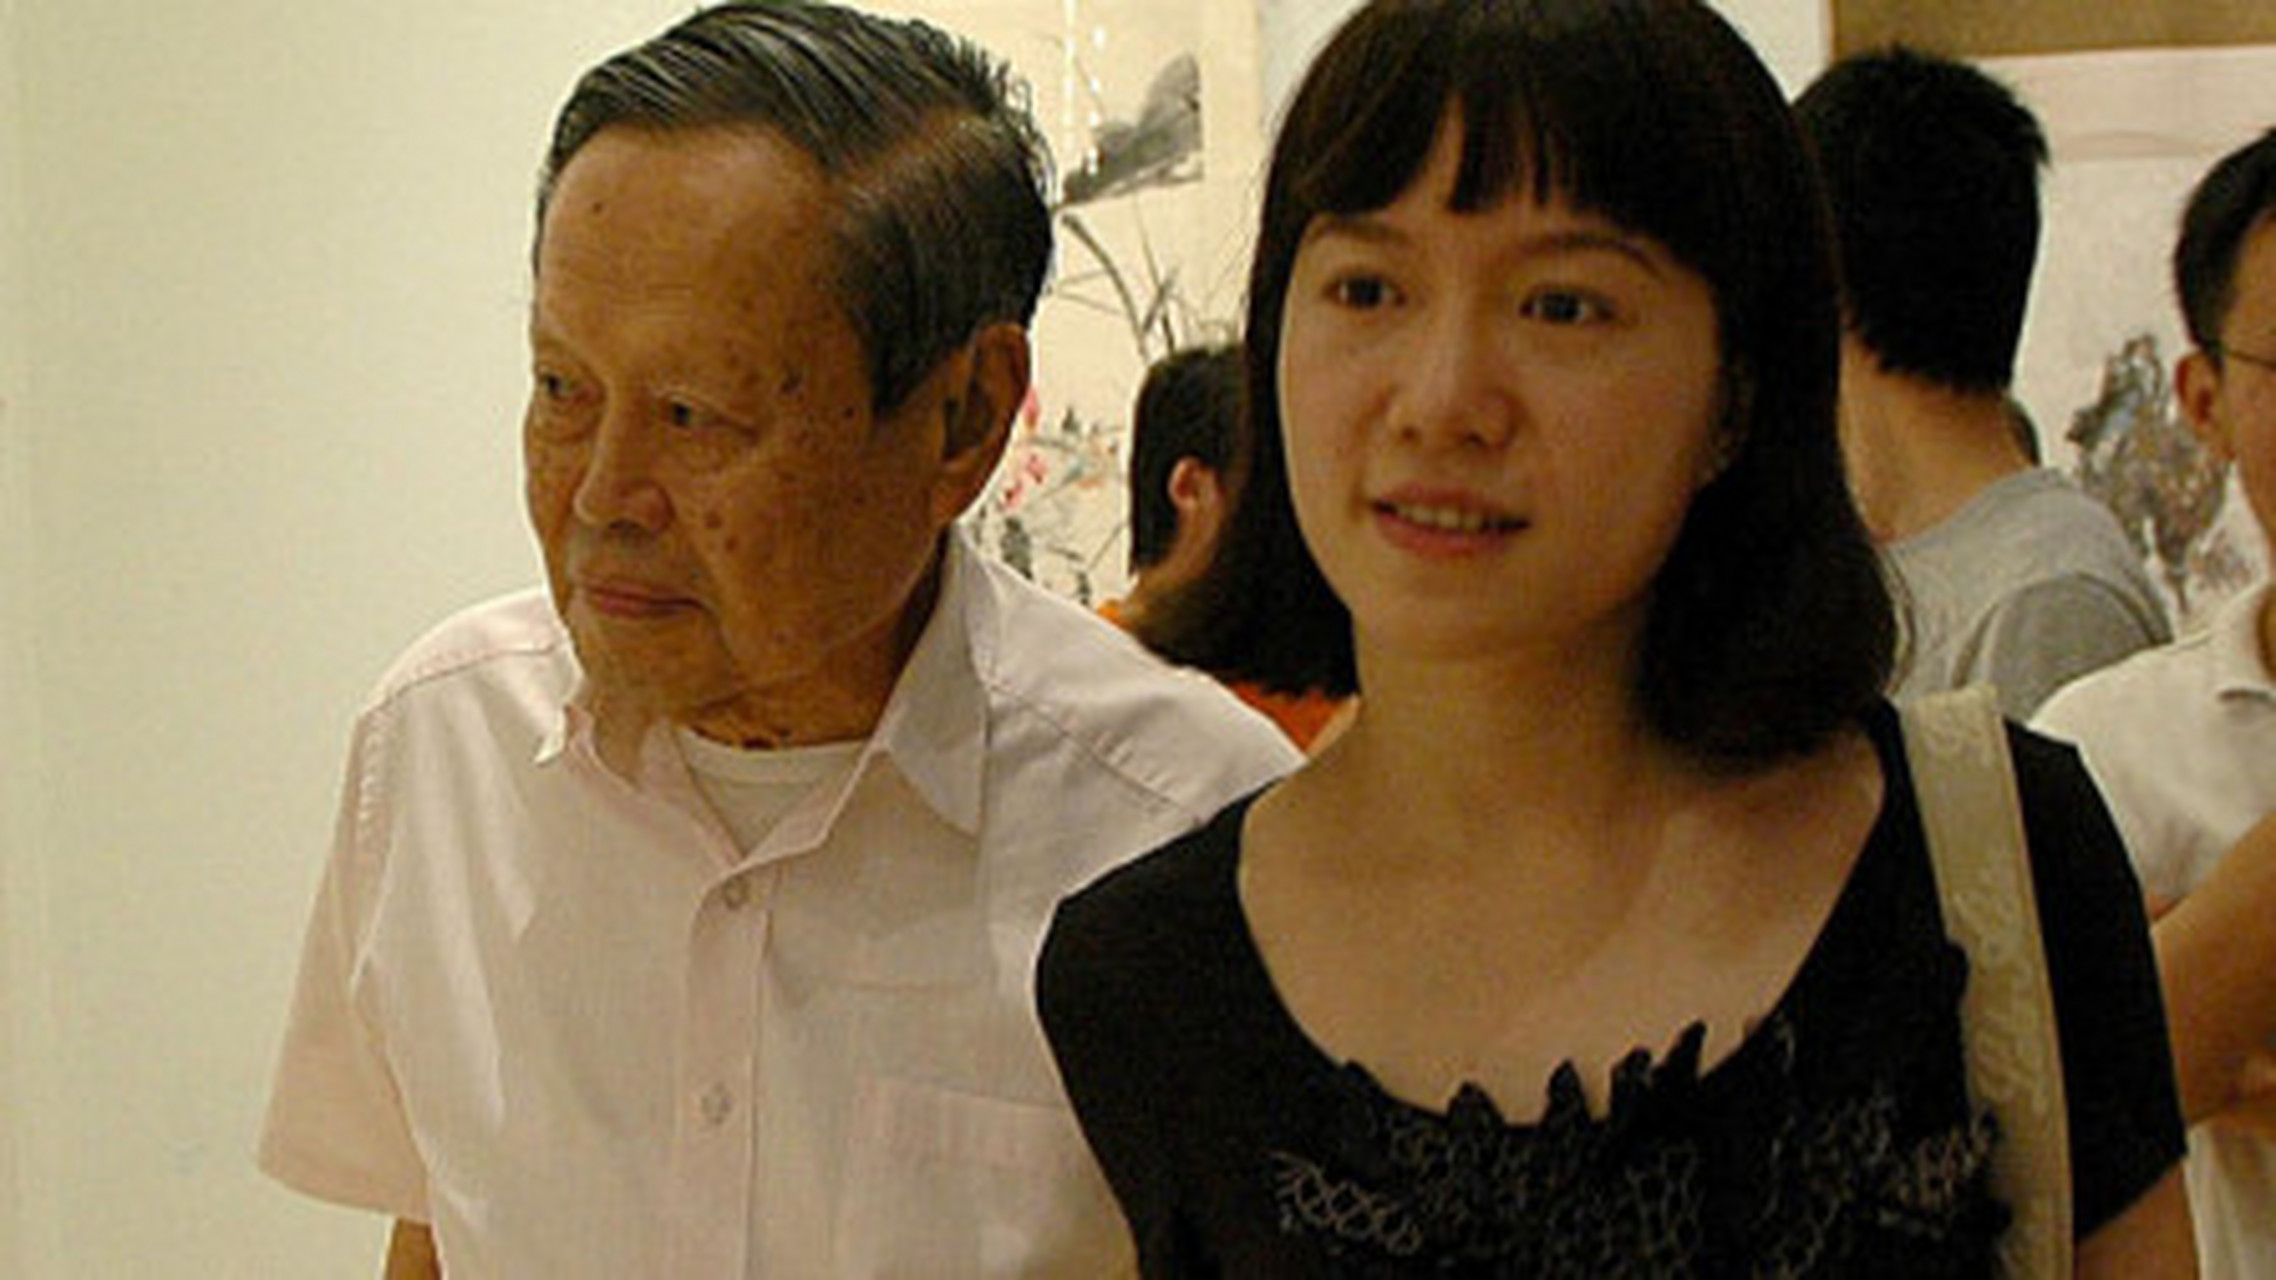 这是2004年,杨振宁和翁虹一家人一起的留影,照片中站在后排的人是翁虹